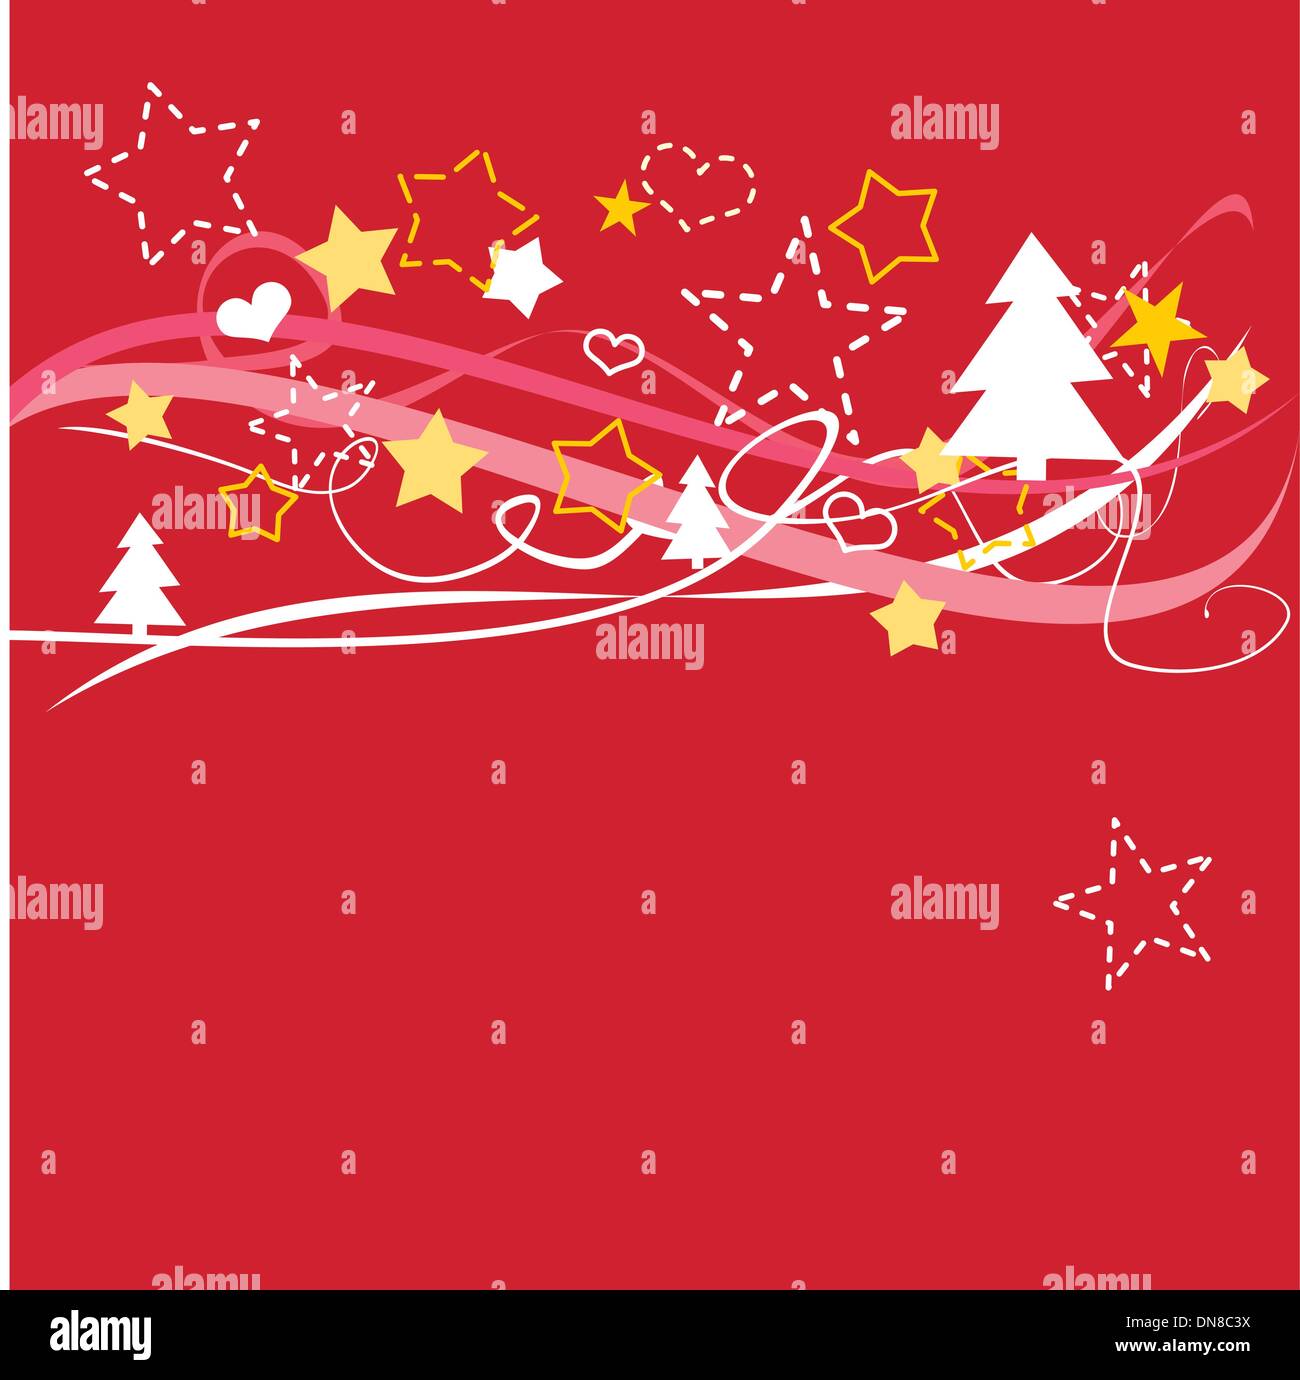 Vecteur de Noël carte ou invitation pour partie avec Joyeux Noël souhaits en espanol : Feliz Navidad Illustration de Vecteur